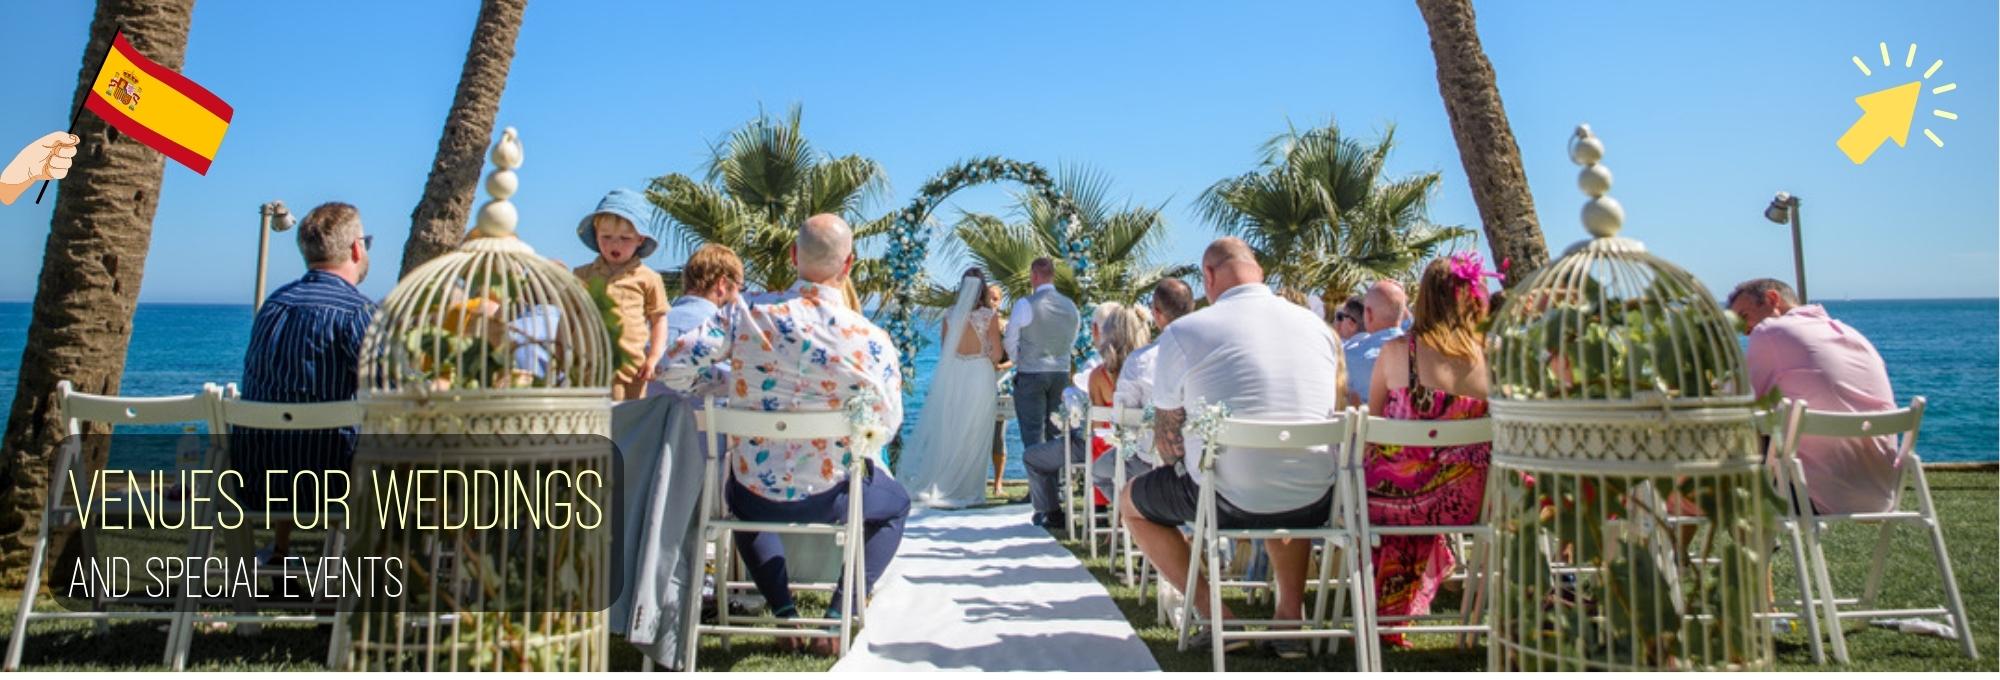 Wedding venues Costa del Sol 